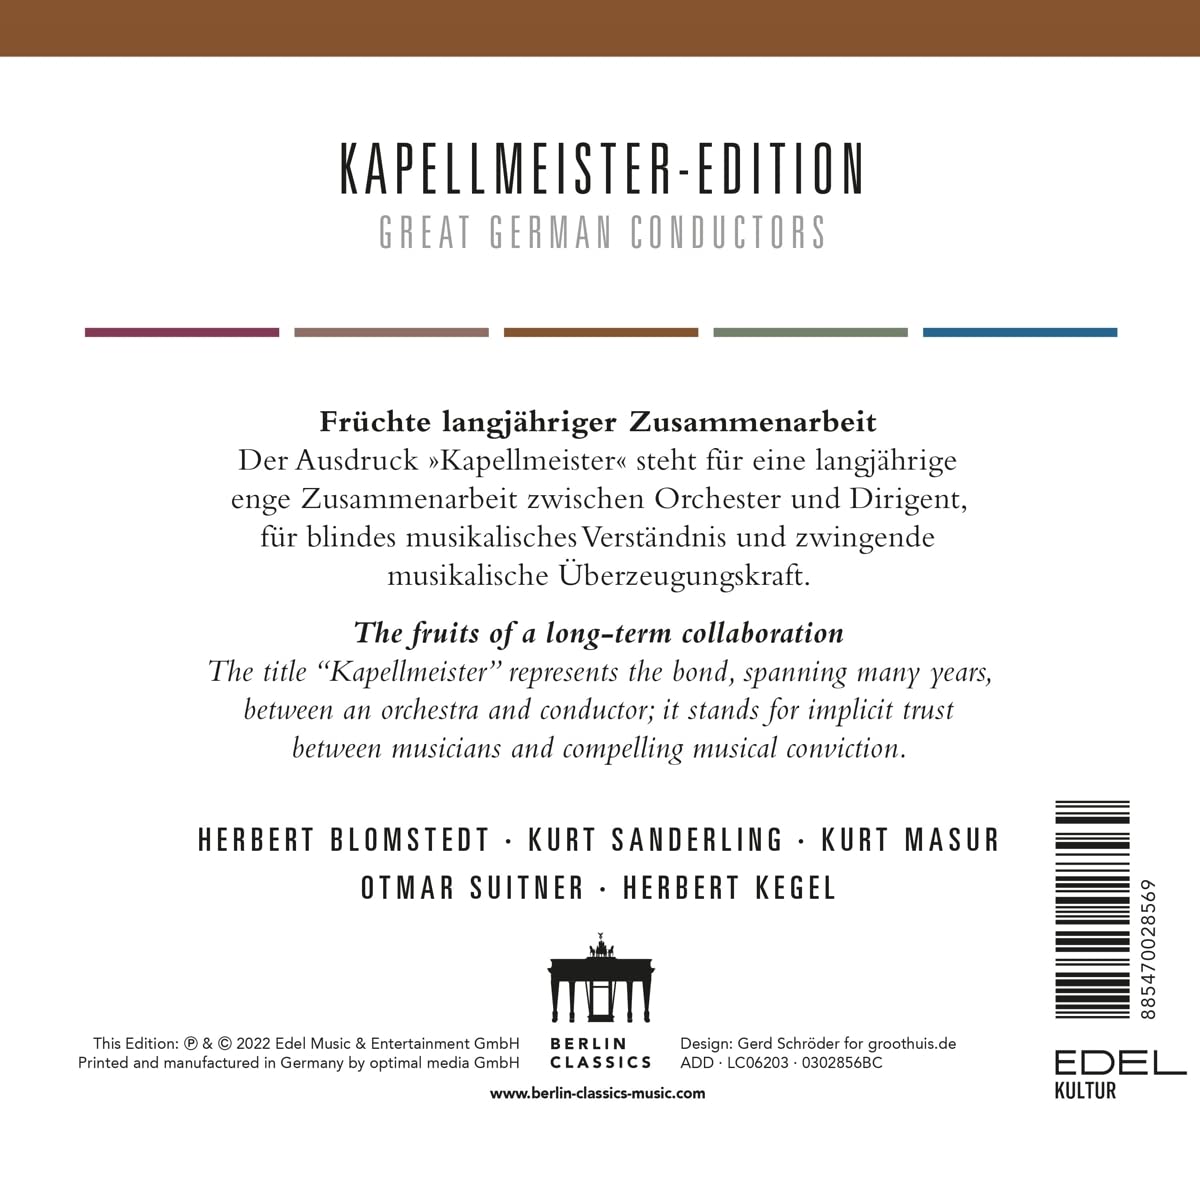 카펠마이스터 에디션 - 다섯 명의 독일 지휘자들의 명연 모음집 (Kapellmeister-Edition: Great German Conductors) 